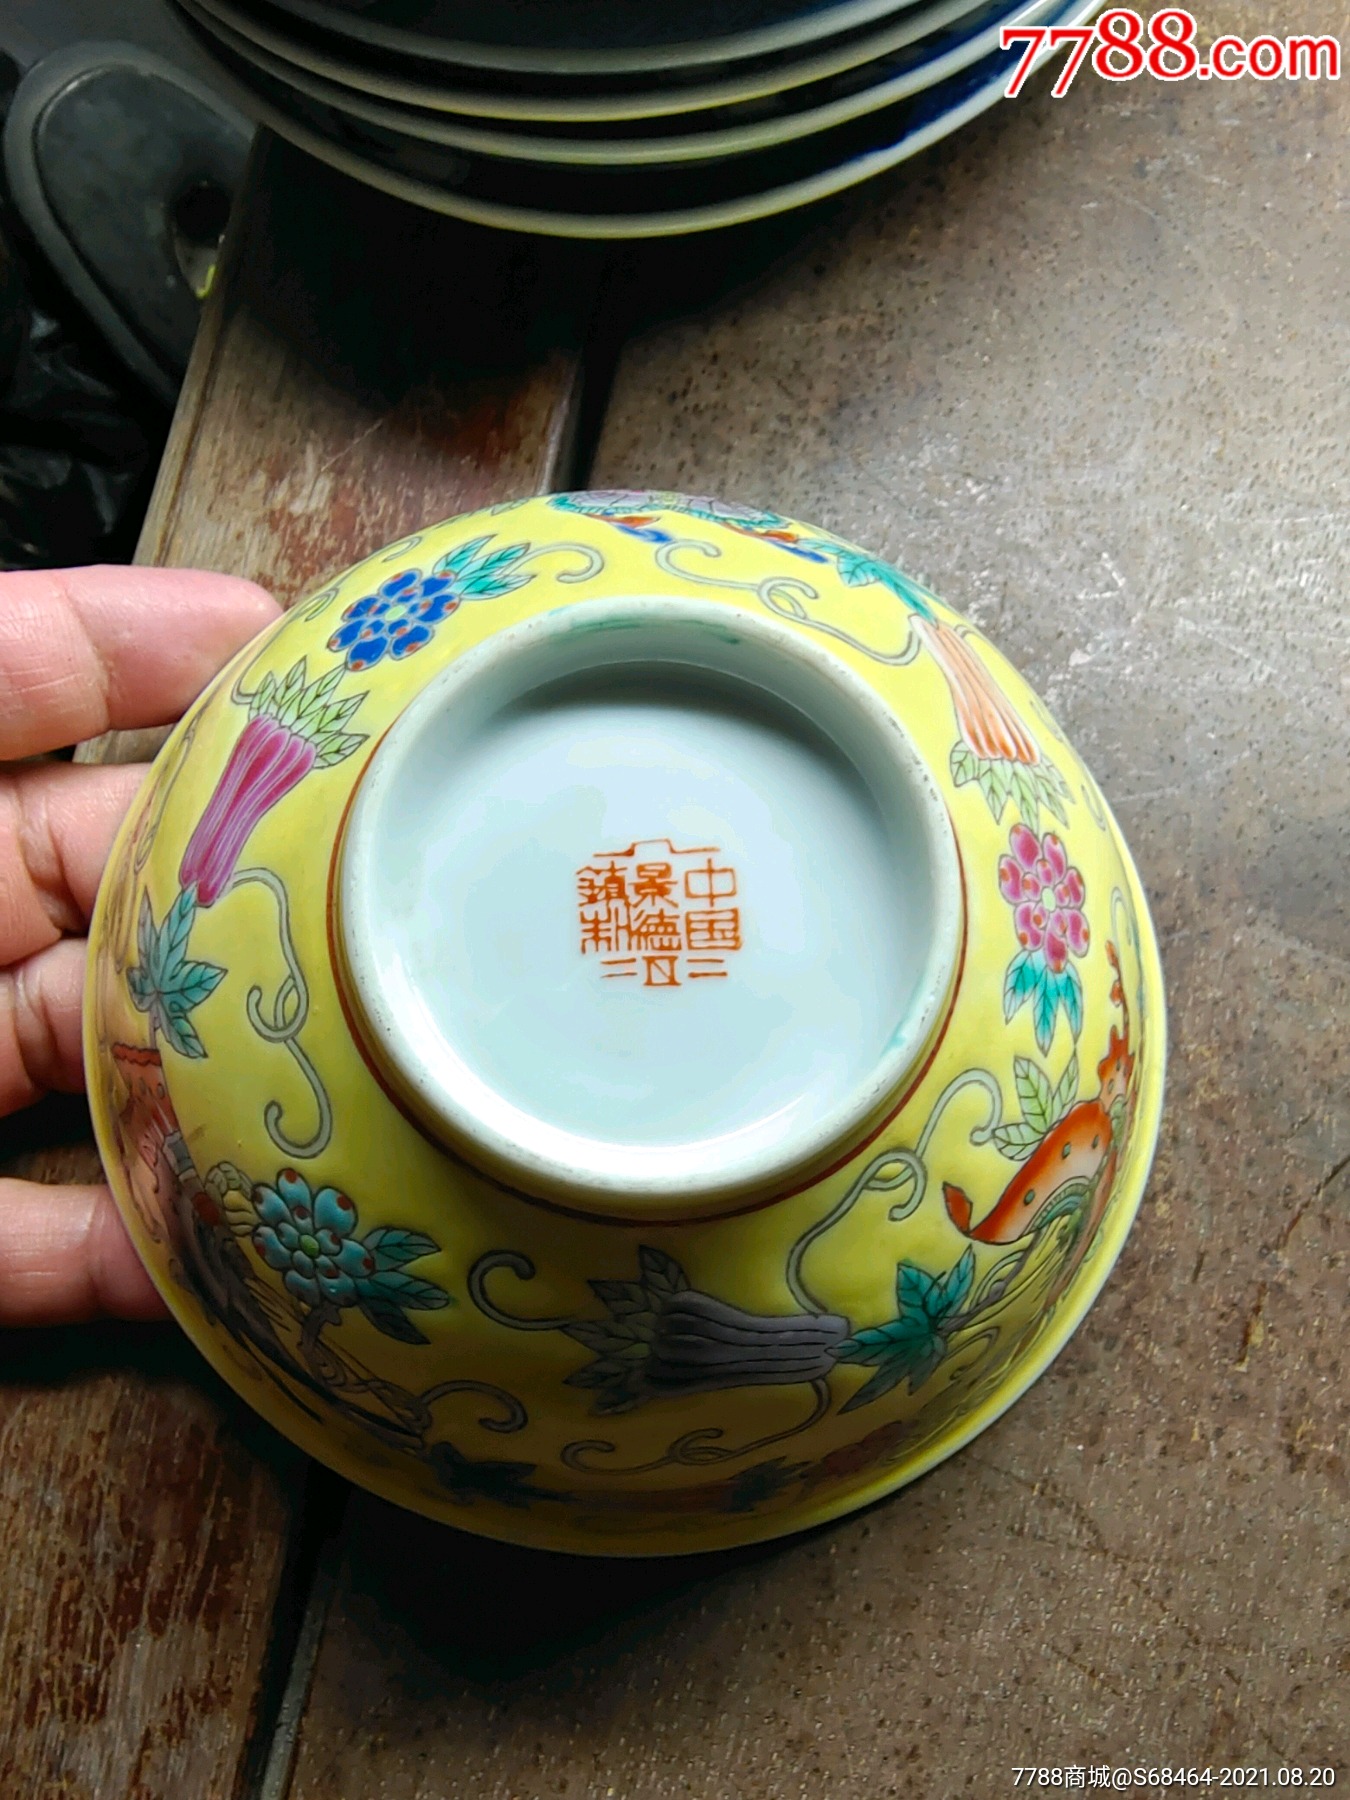 6厘米中国景德镇制底款黄底蝴蝶花果缠枝粉彩碗一个